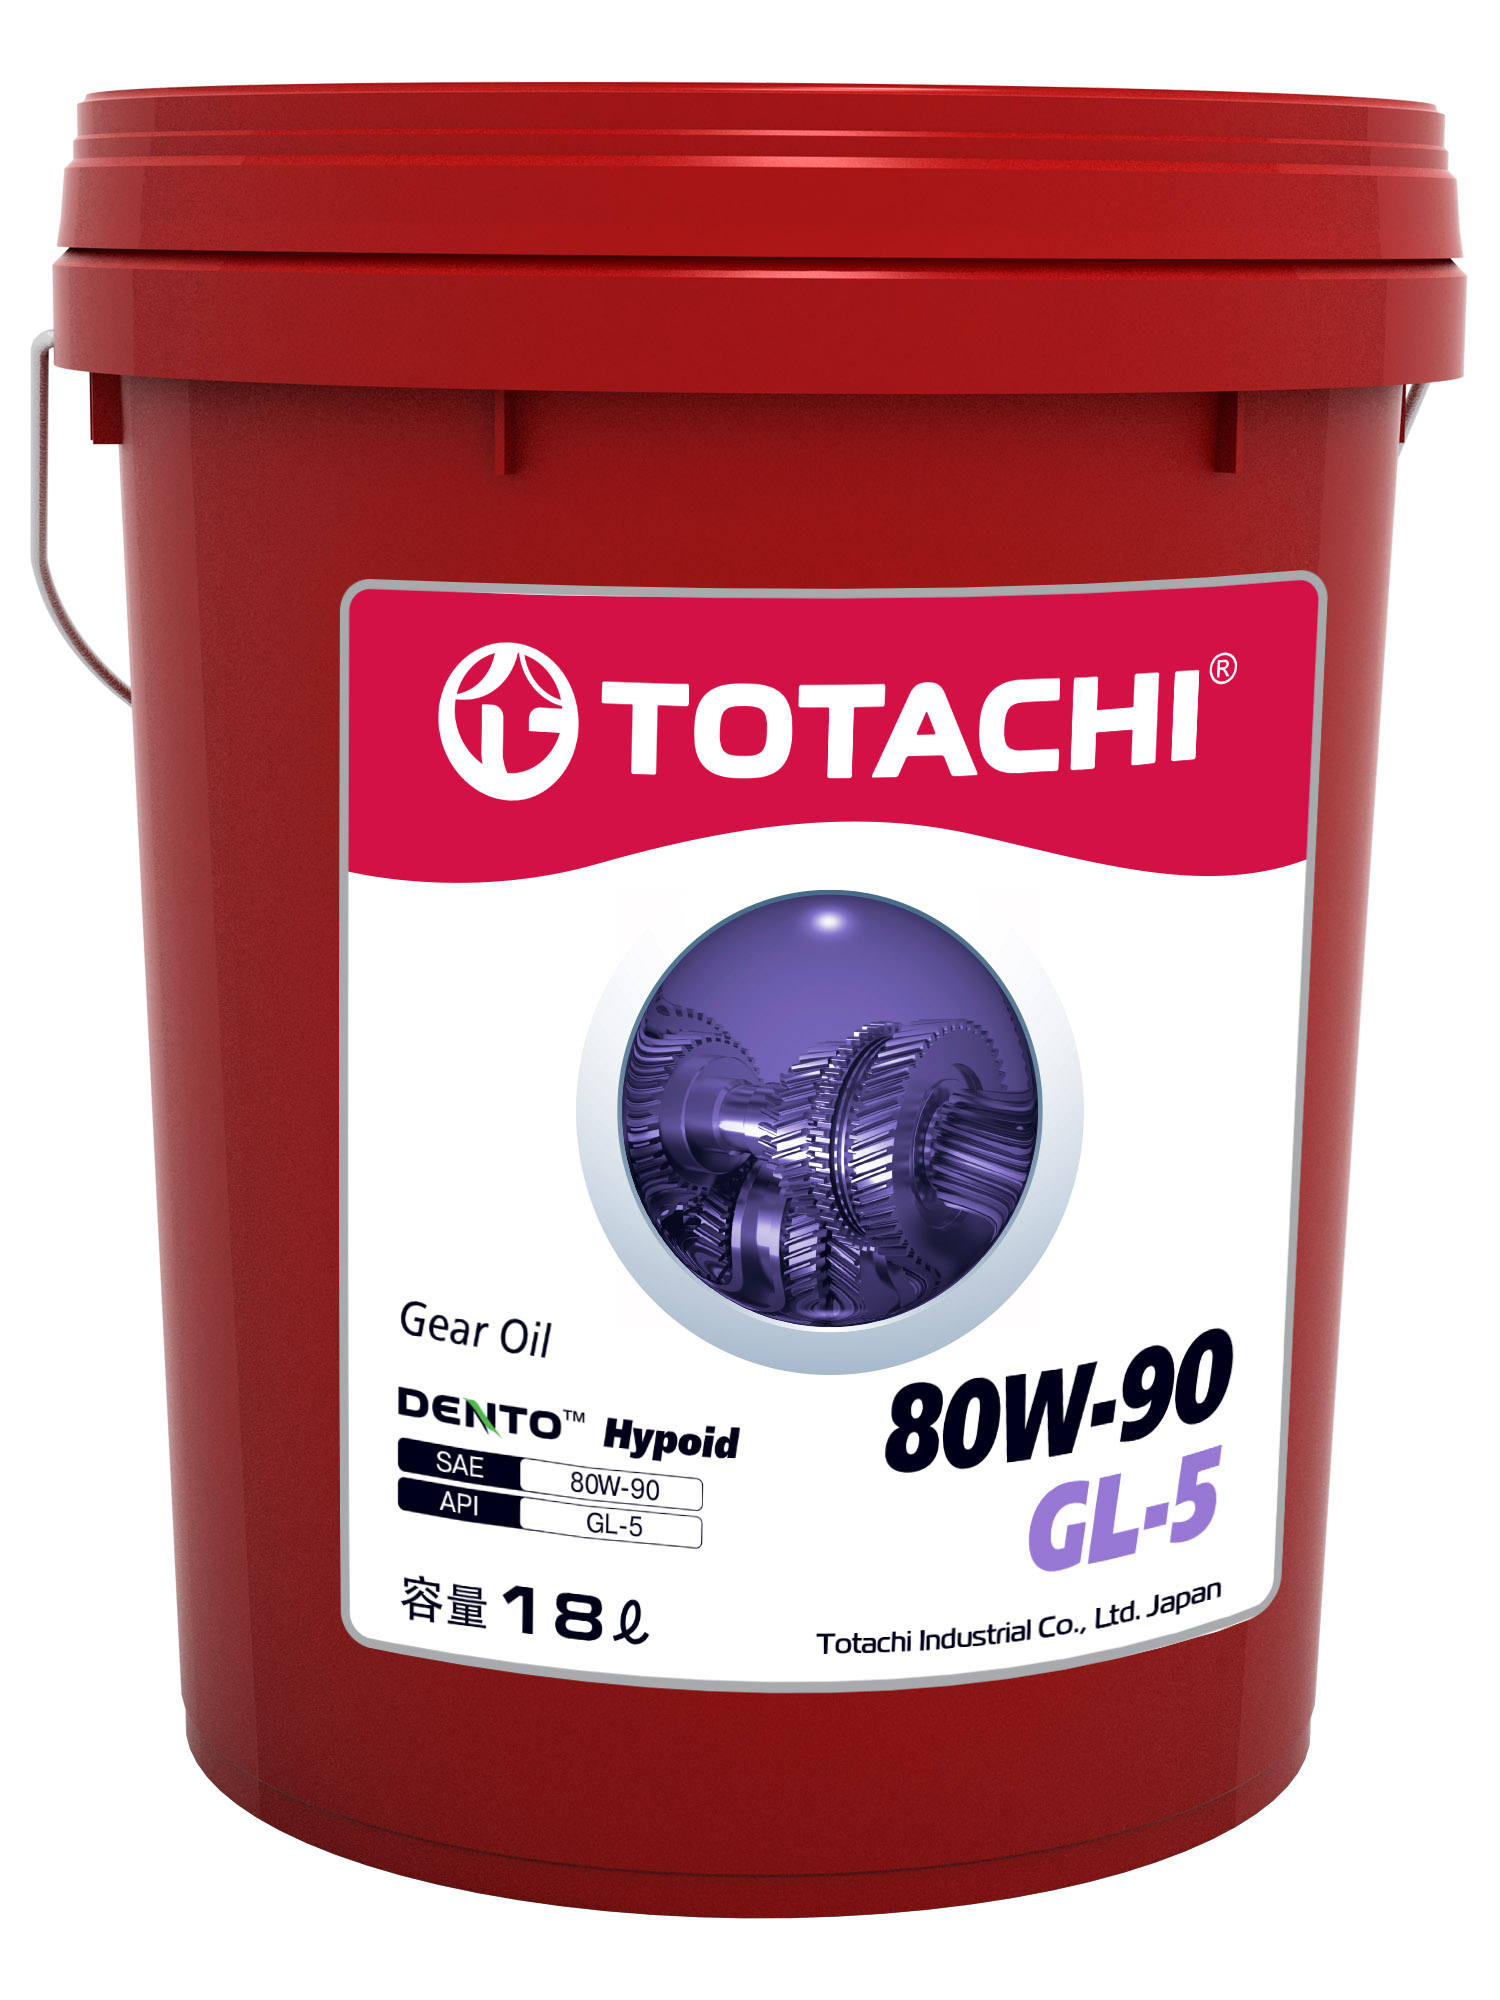 TOTACHI Gear Oil DENTO Hypoid Sae 80W-90